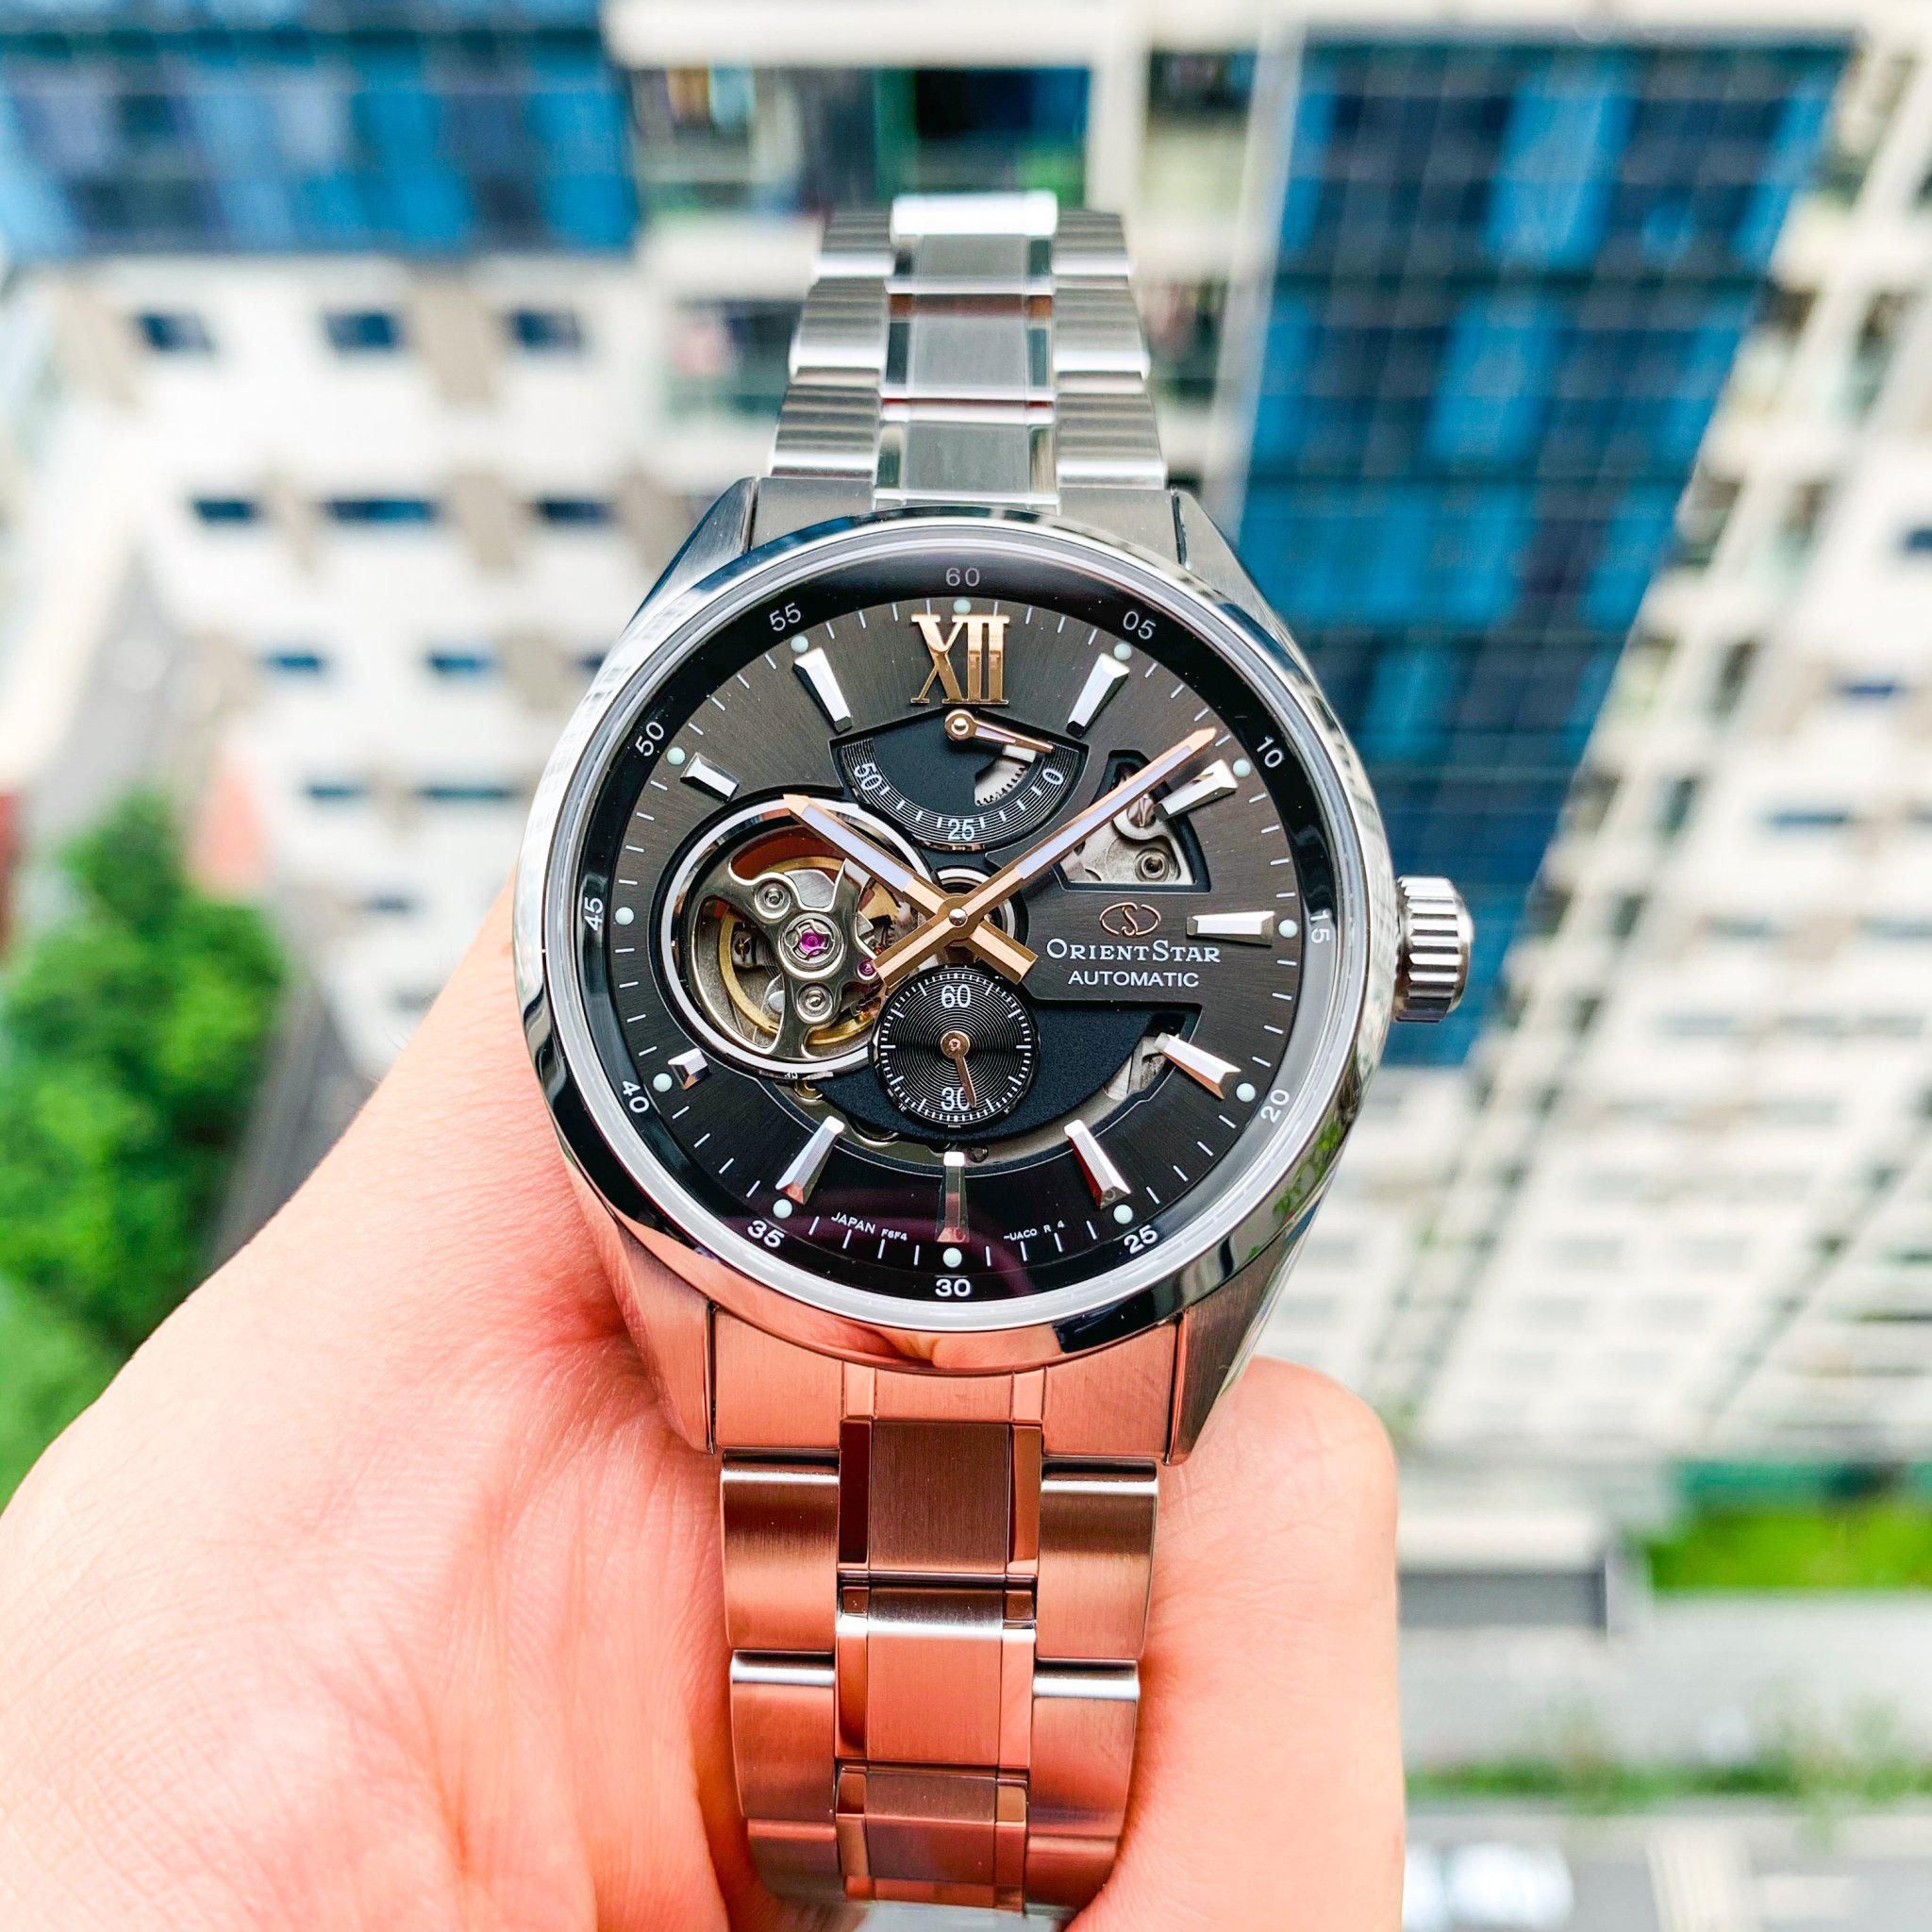 Mua Đồng hồ Orient tại Đồng Hới Quảng Bình - Đồng hồ chính hãng, giá tốt nhất - Orient Star Joker Skeleton Gray - RE-AV0004N